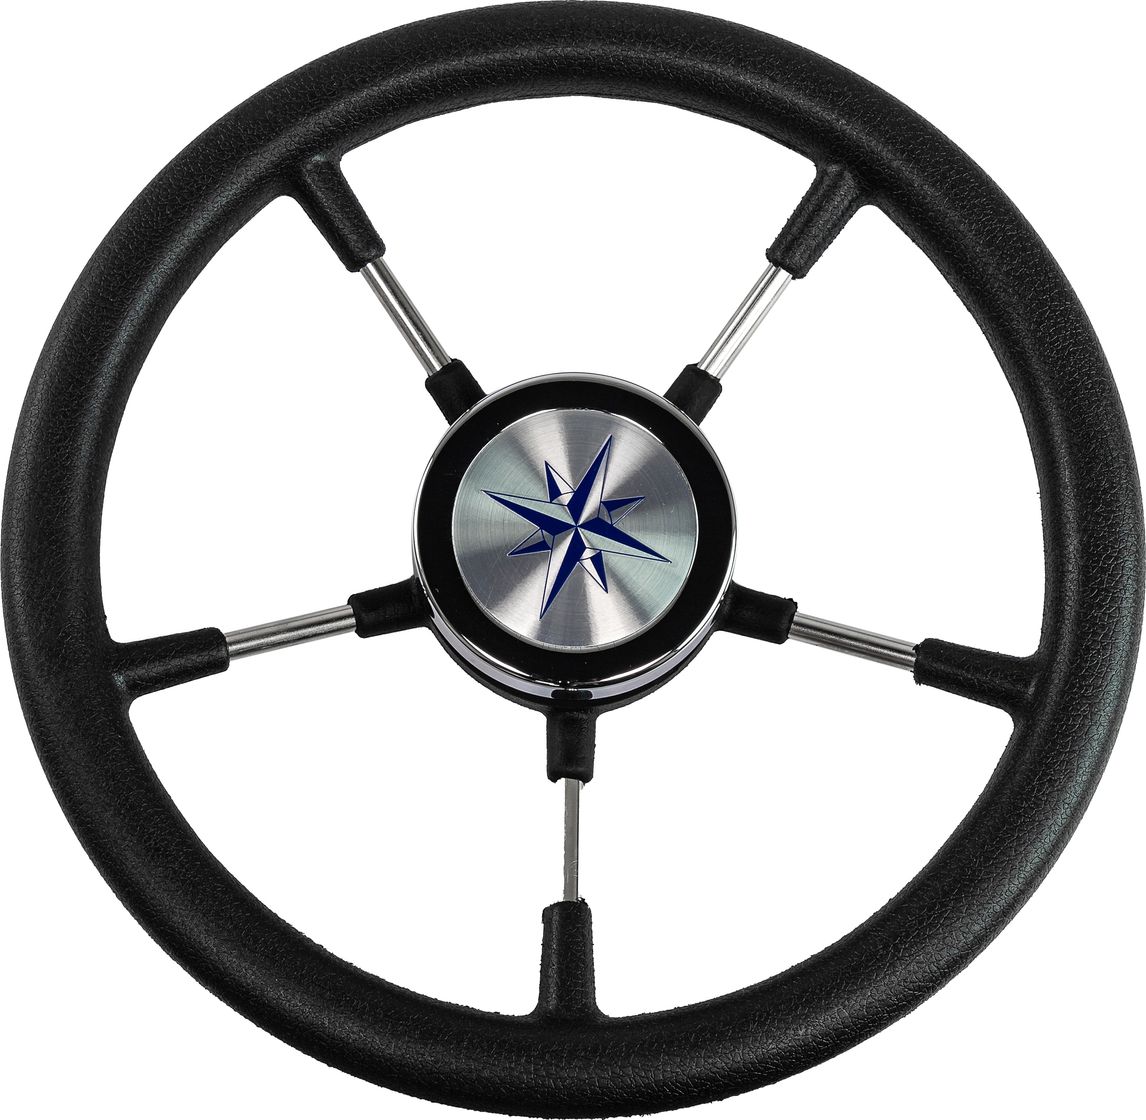 Рулевое колесо RIVA RSL обод черный, спицы серебряные д. 320 мм VN732022-01 рулевое колесо riva rsl обод серый спицы серебряные д 320 мм vn732022 03